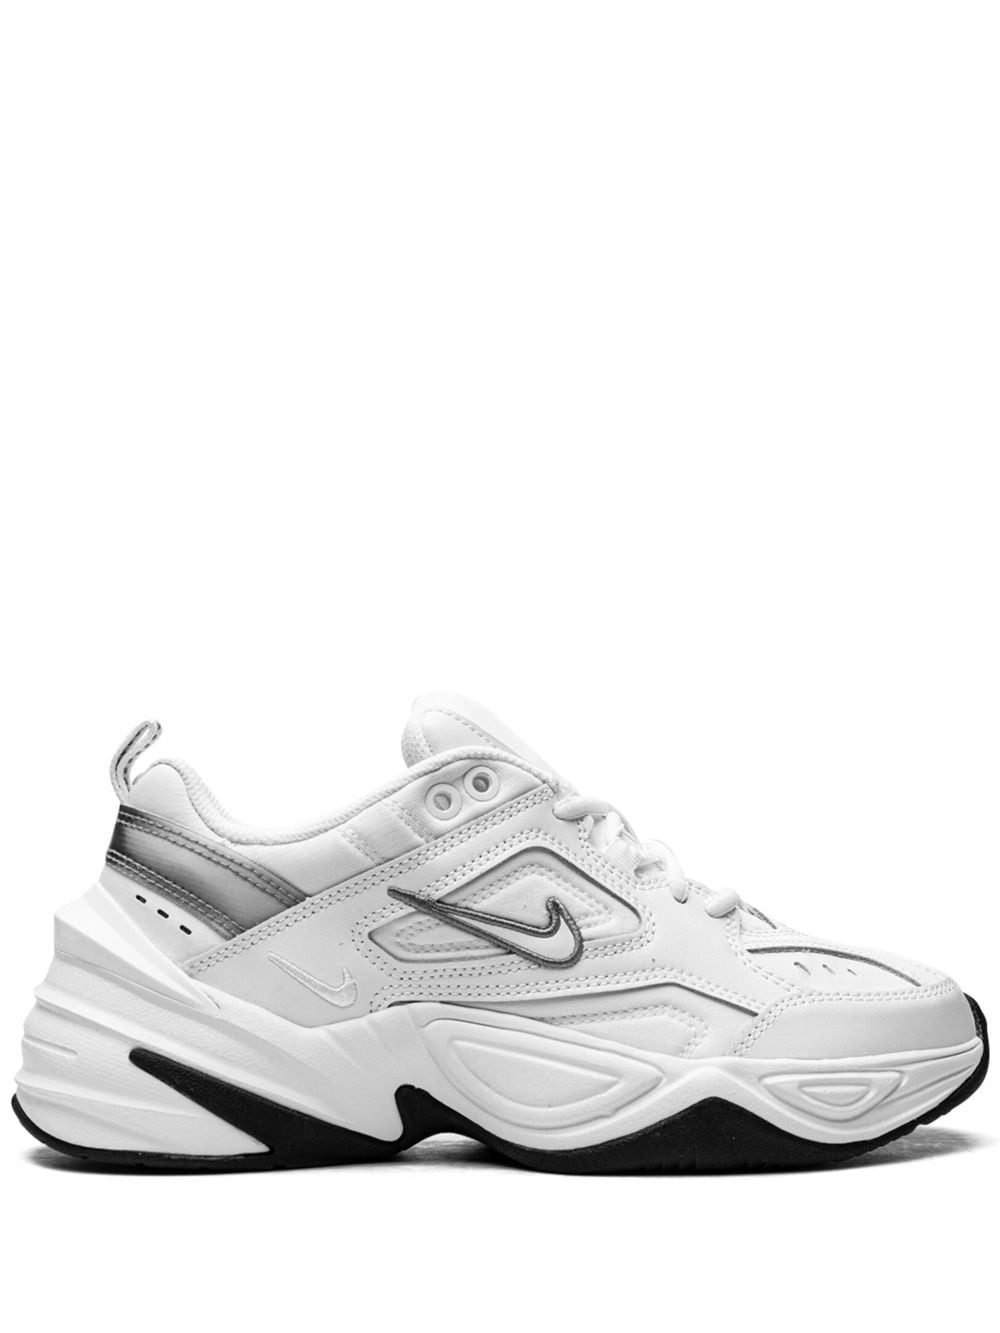 Nike M2K Tekno "White/Cool Grey/Black" Sneakers - Farfetch